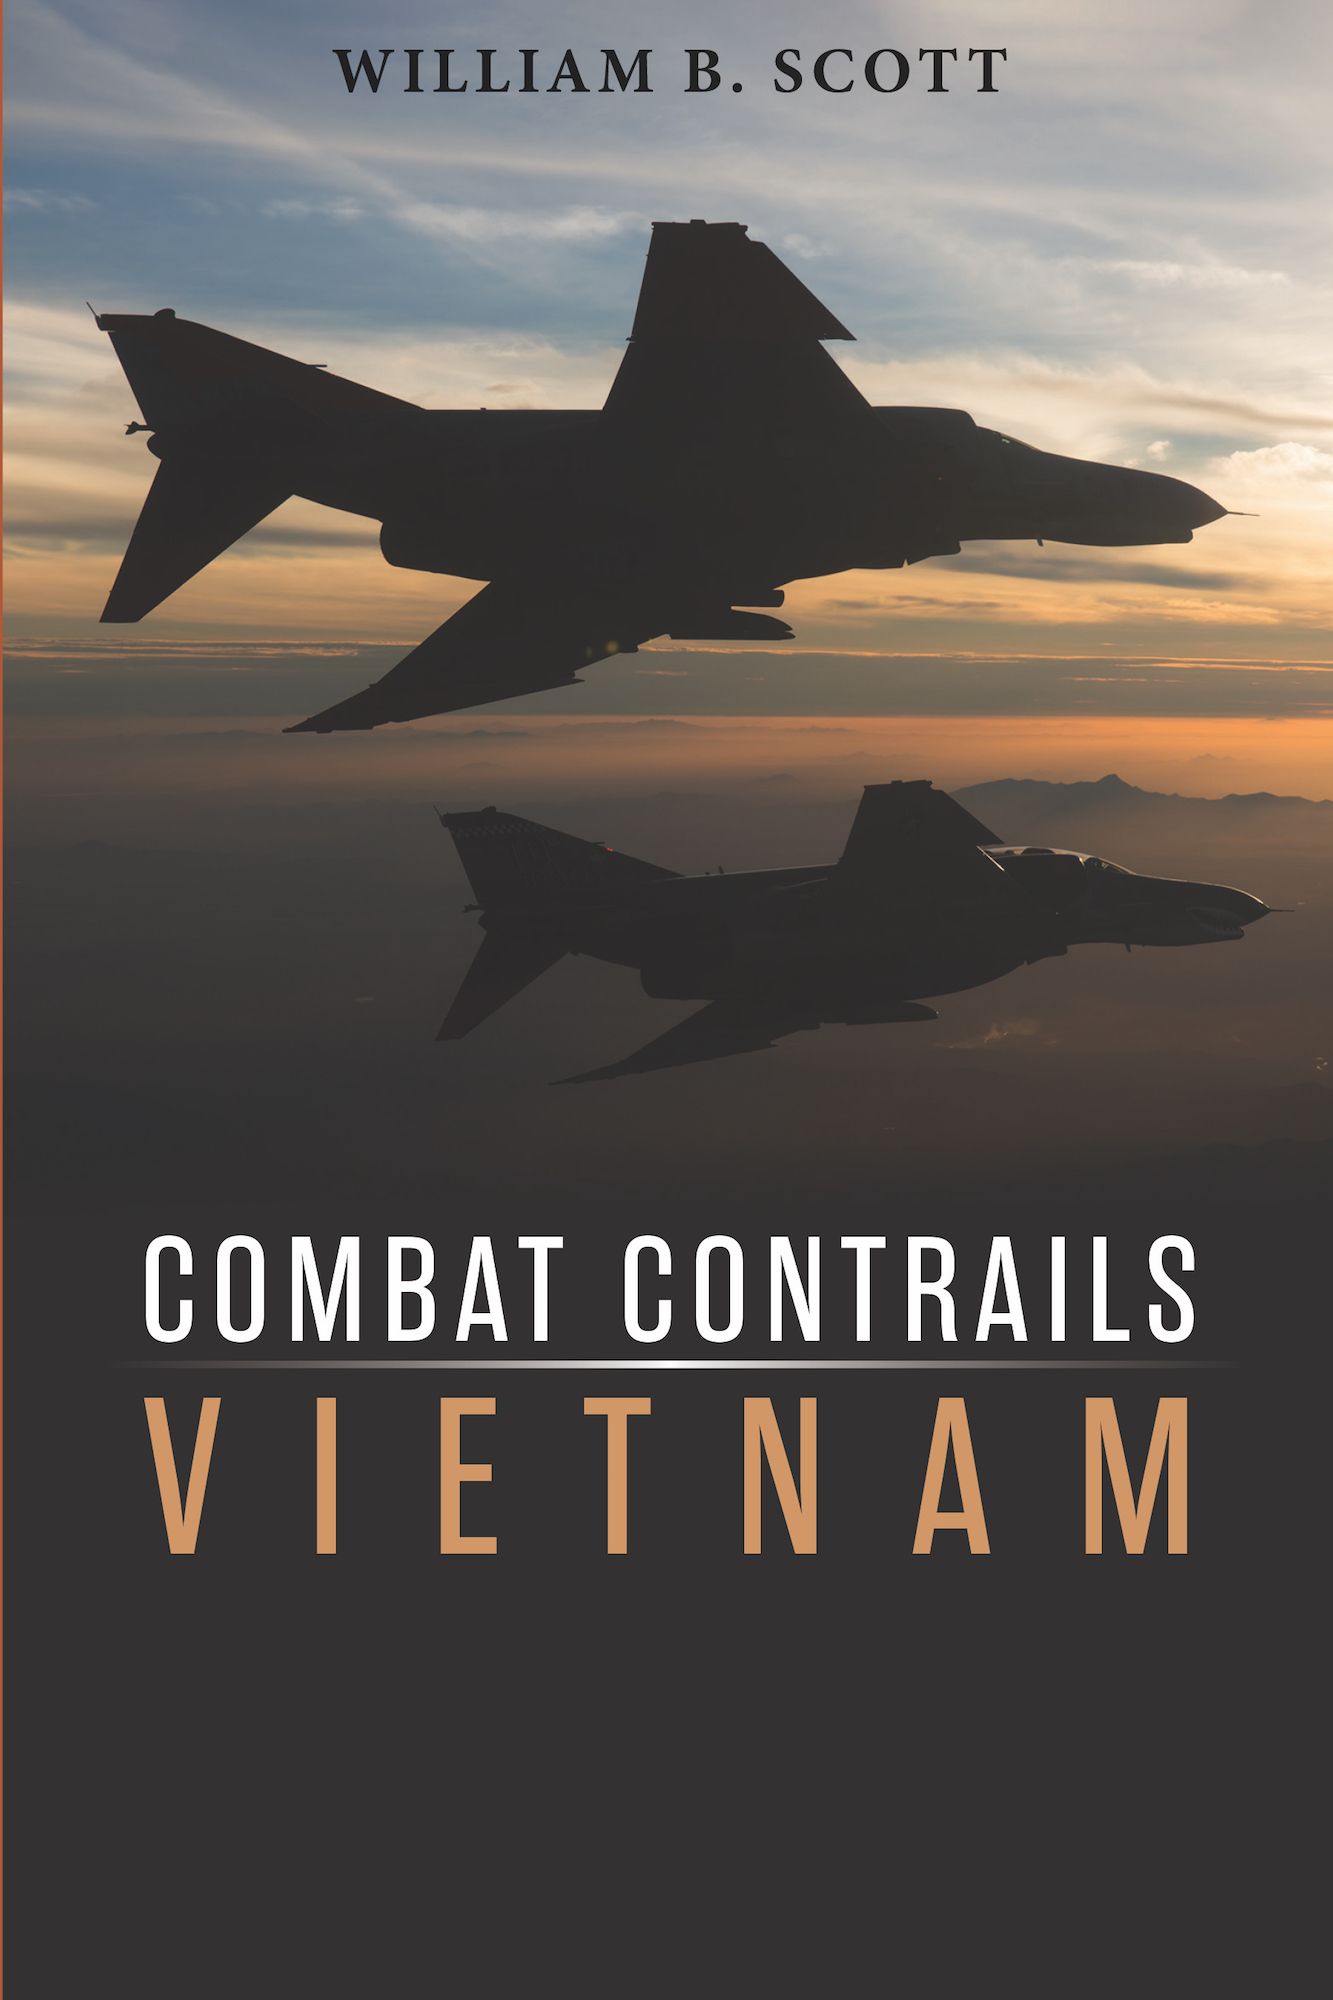 BOOK REVIEW: Combat Contrails - Vietnam